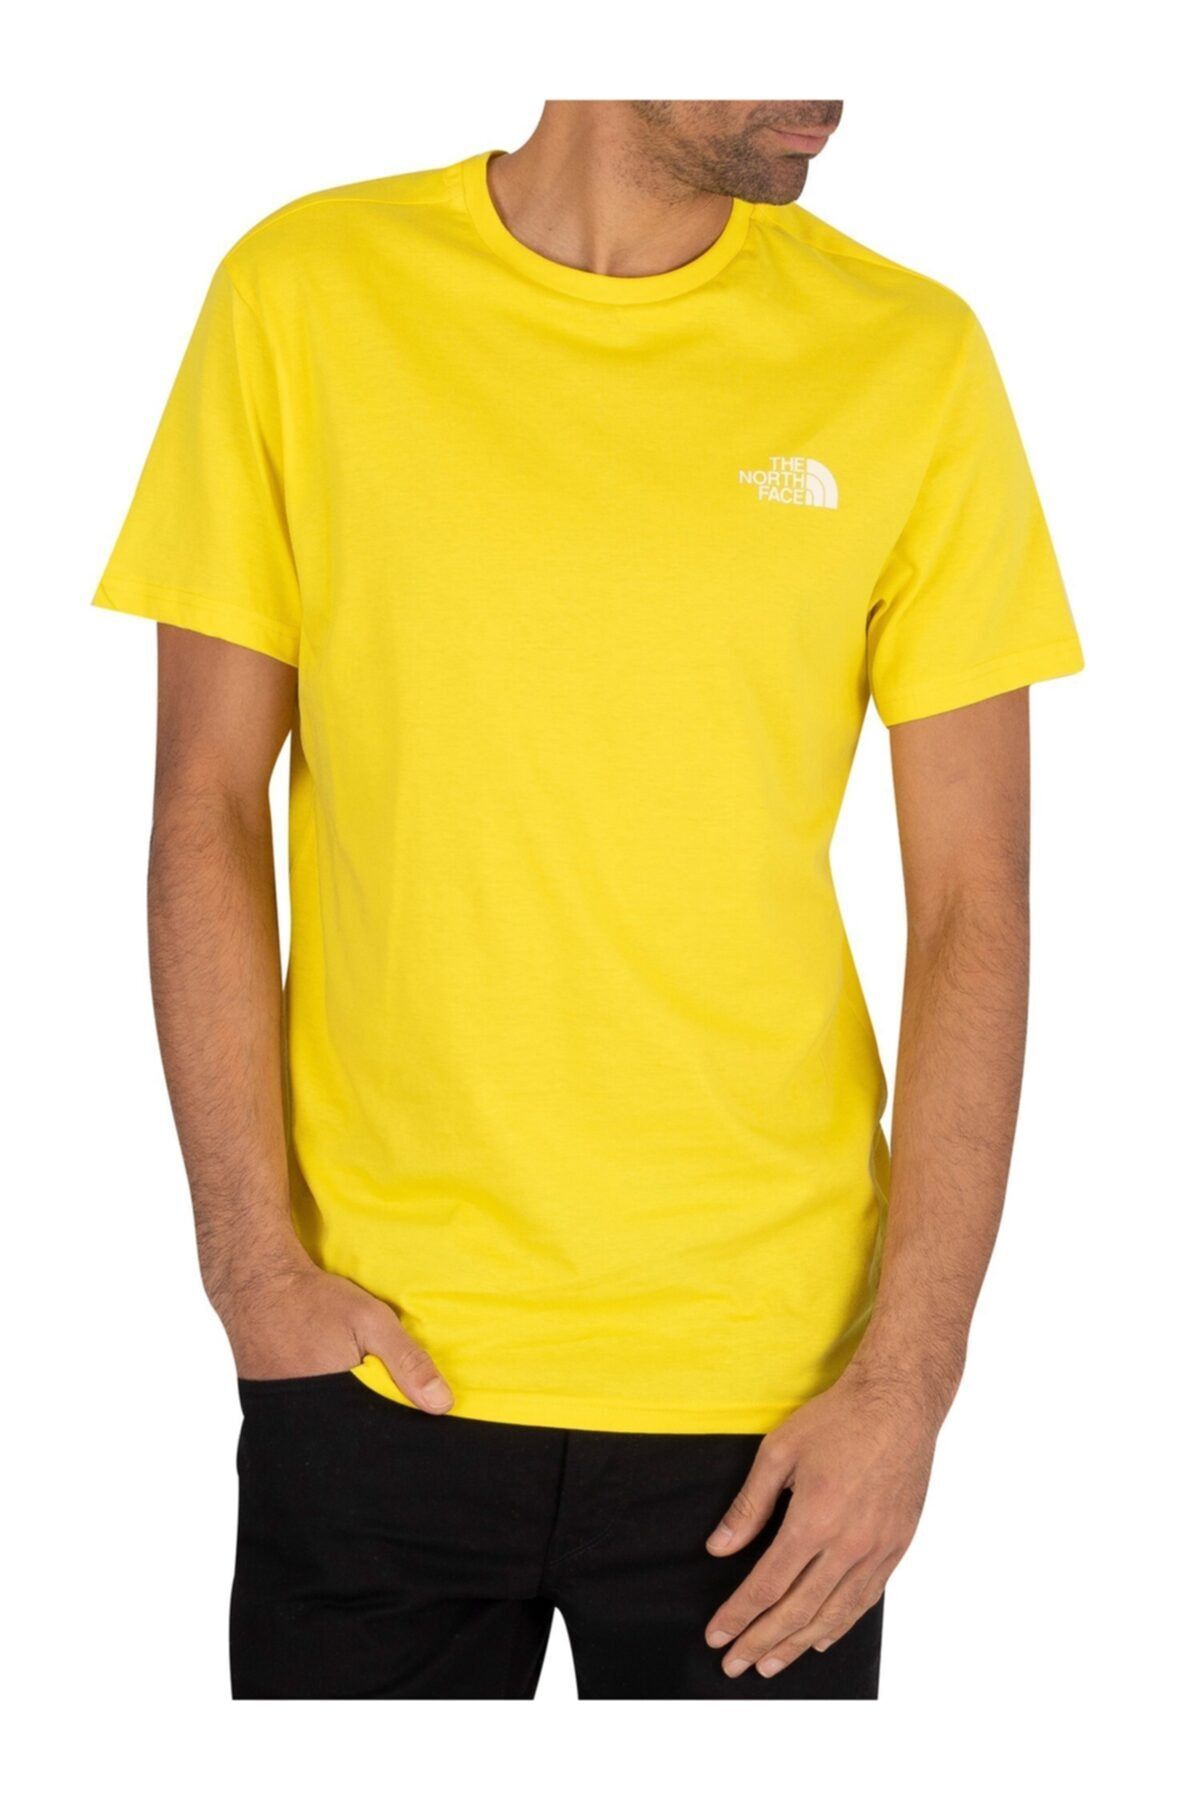 The North Face Simple Dome Erkek T-shirt Kahverengi